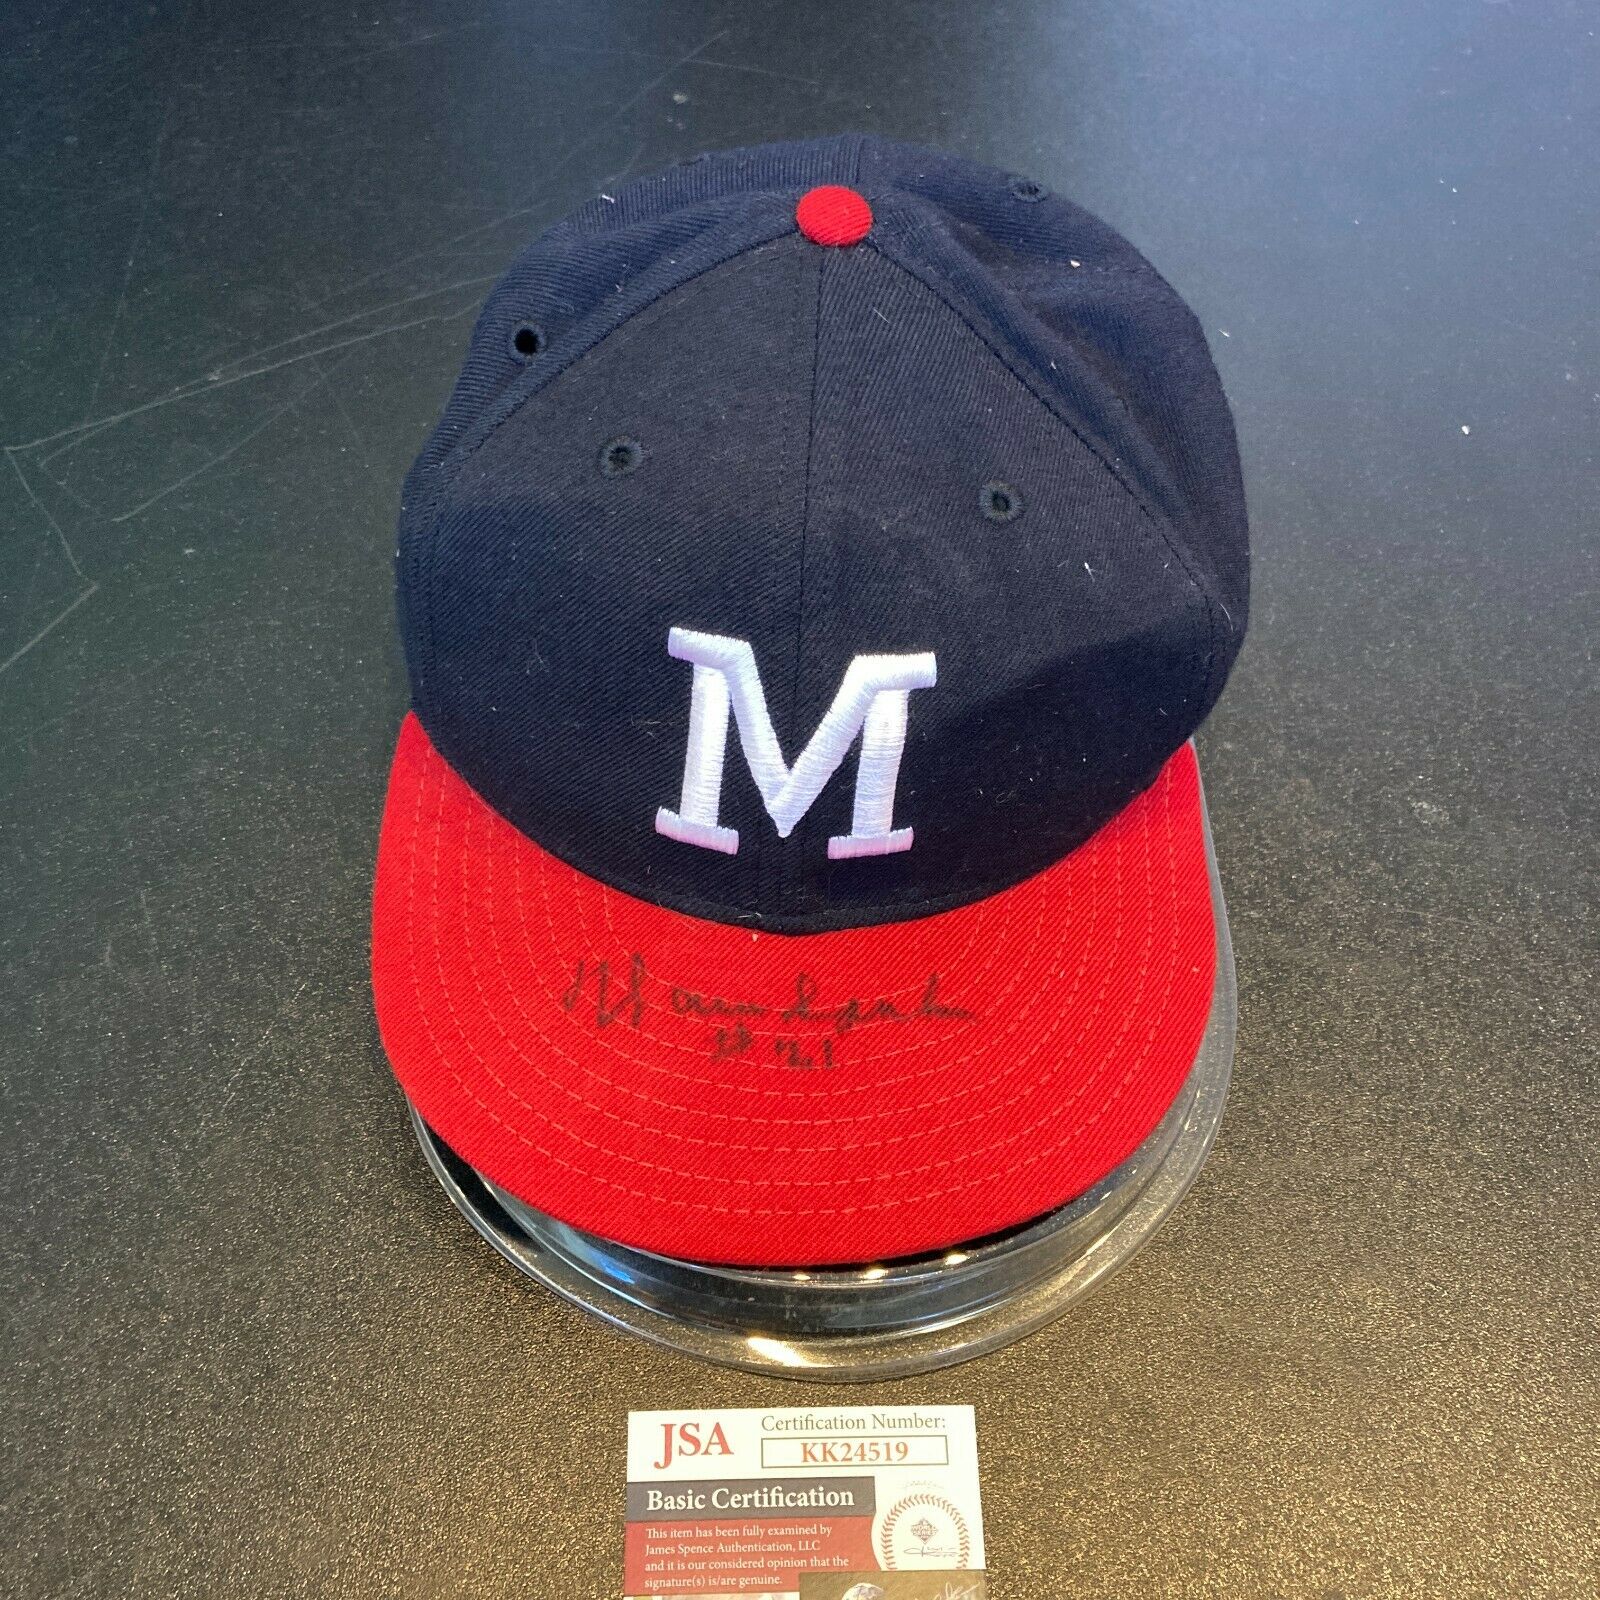 Baseball hat worn by Warren Spahn, Milwaukee Braves